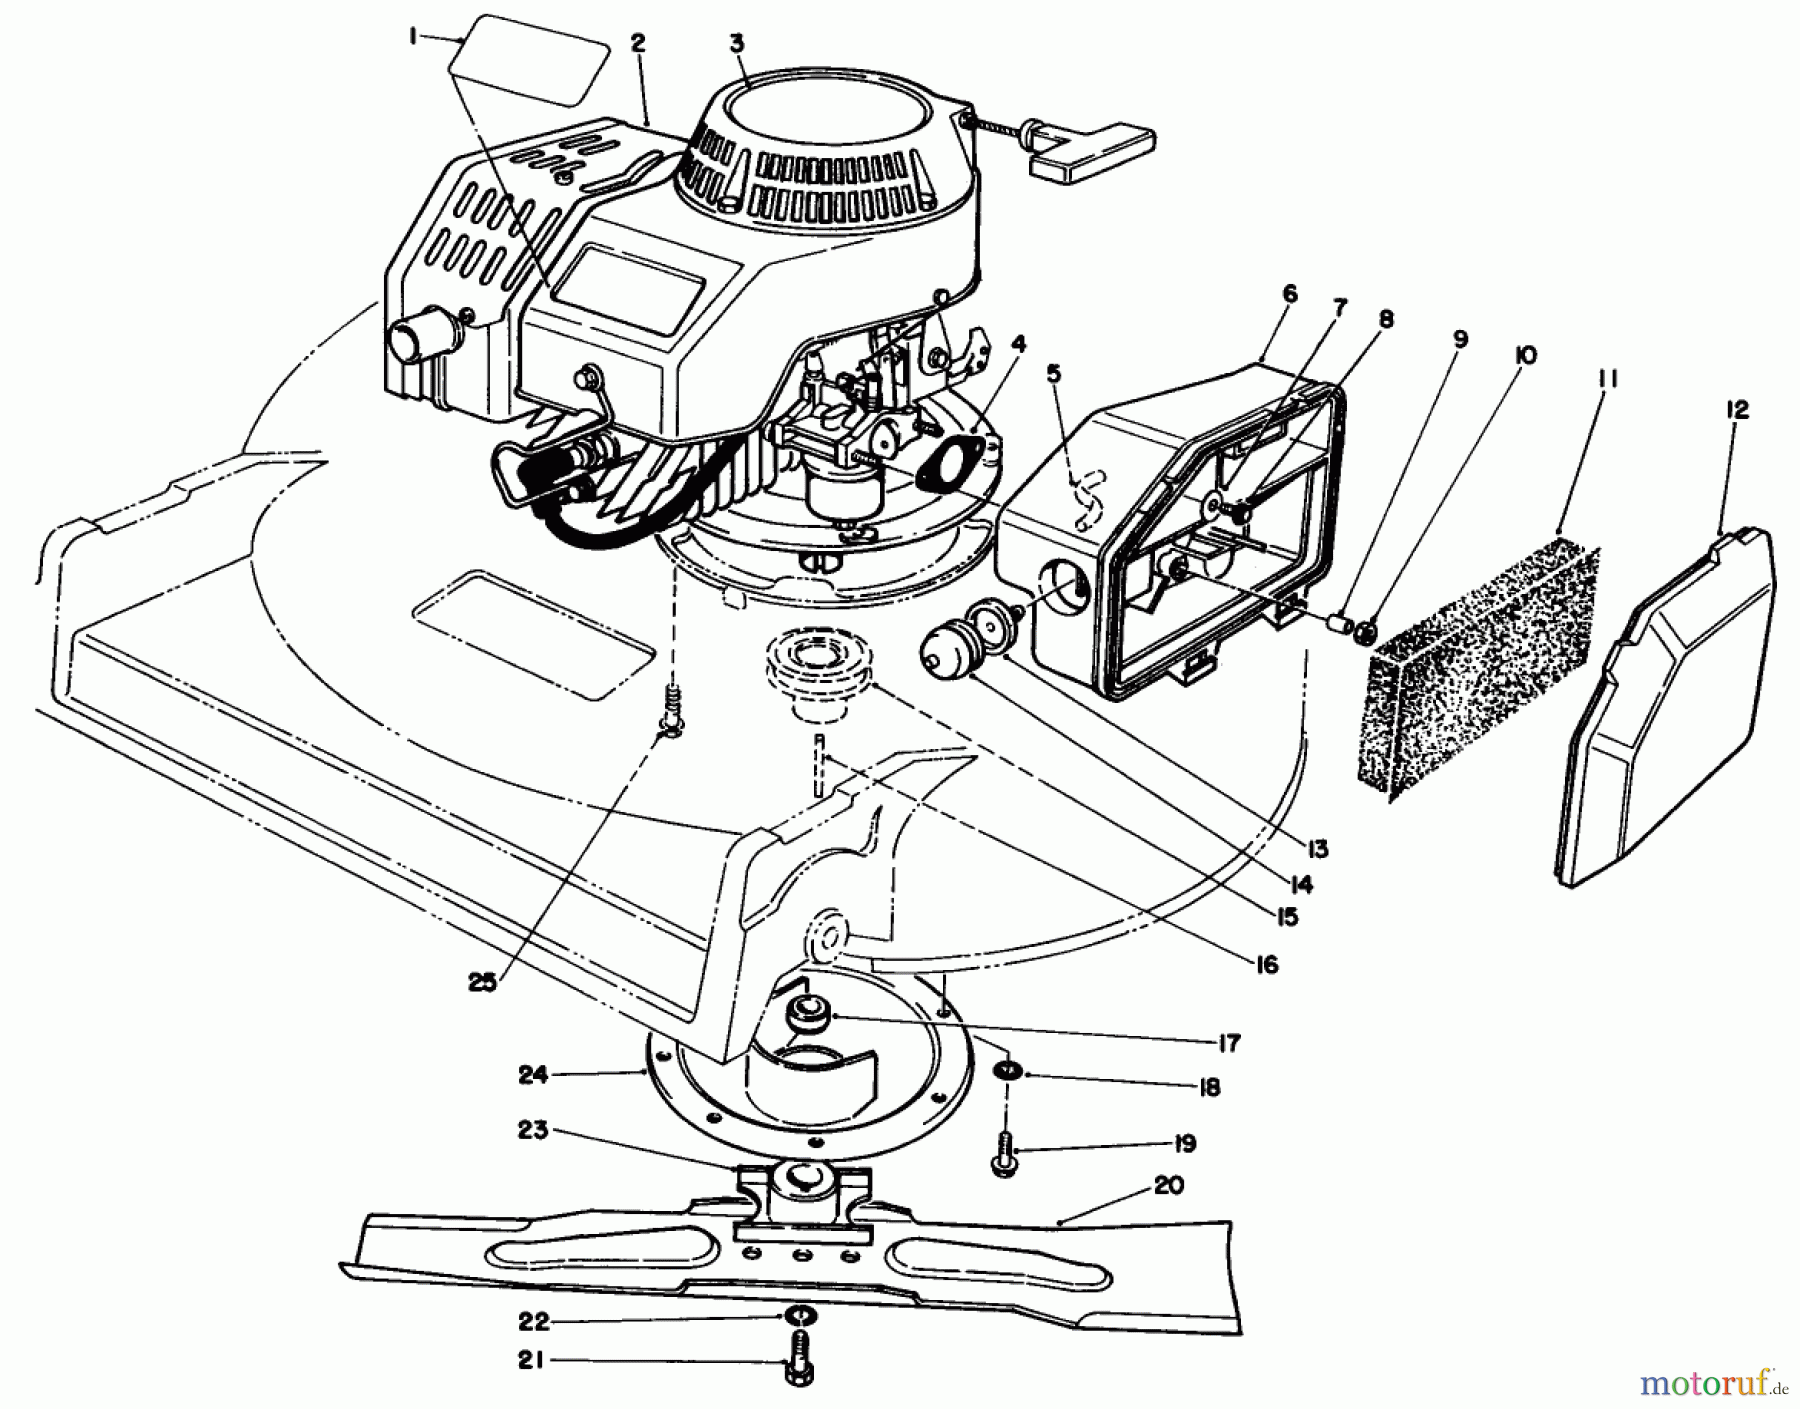  Toro Neu Mowers, Walk-Behind Seite 2 22030 - Toro Lawnmower, 1990 (0000001-0999999) ENGINE ASSEMBLY (MODEL 22035)